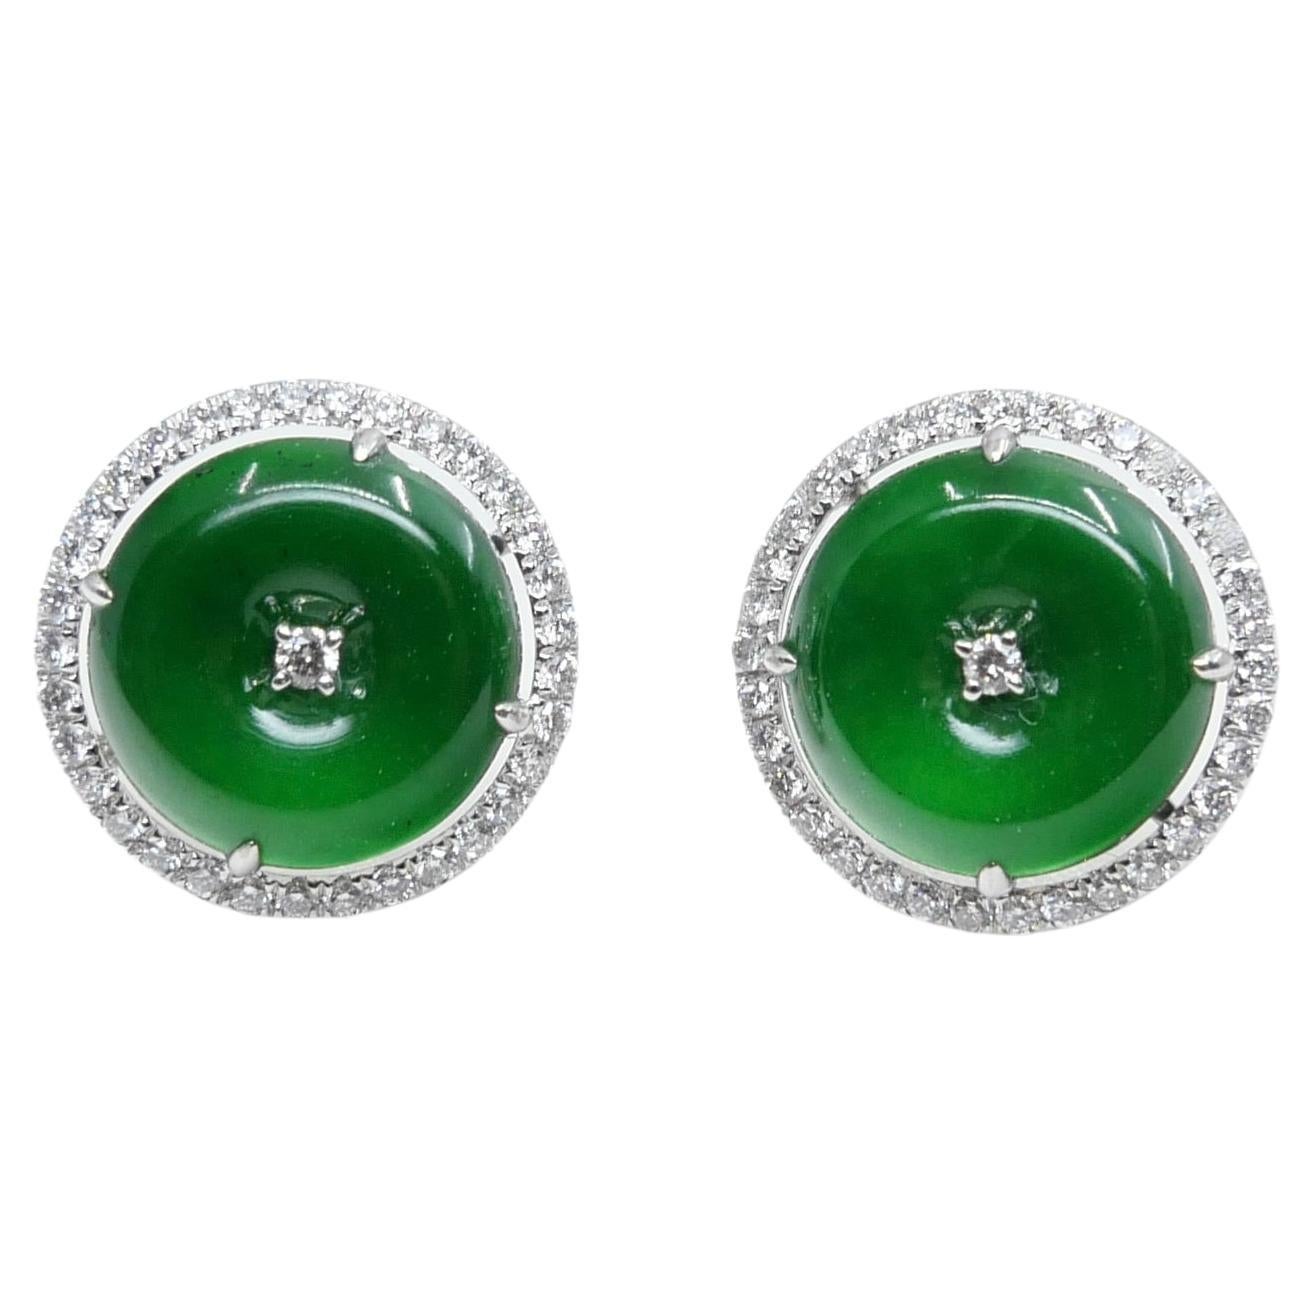 Zertifizierte Ohrringe, natürlicher Typ A Jadeit Jade und Diamant. Apfelgrüne Farbe